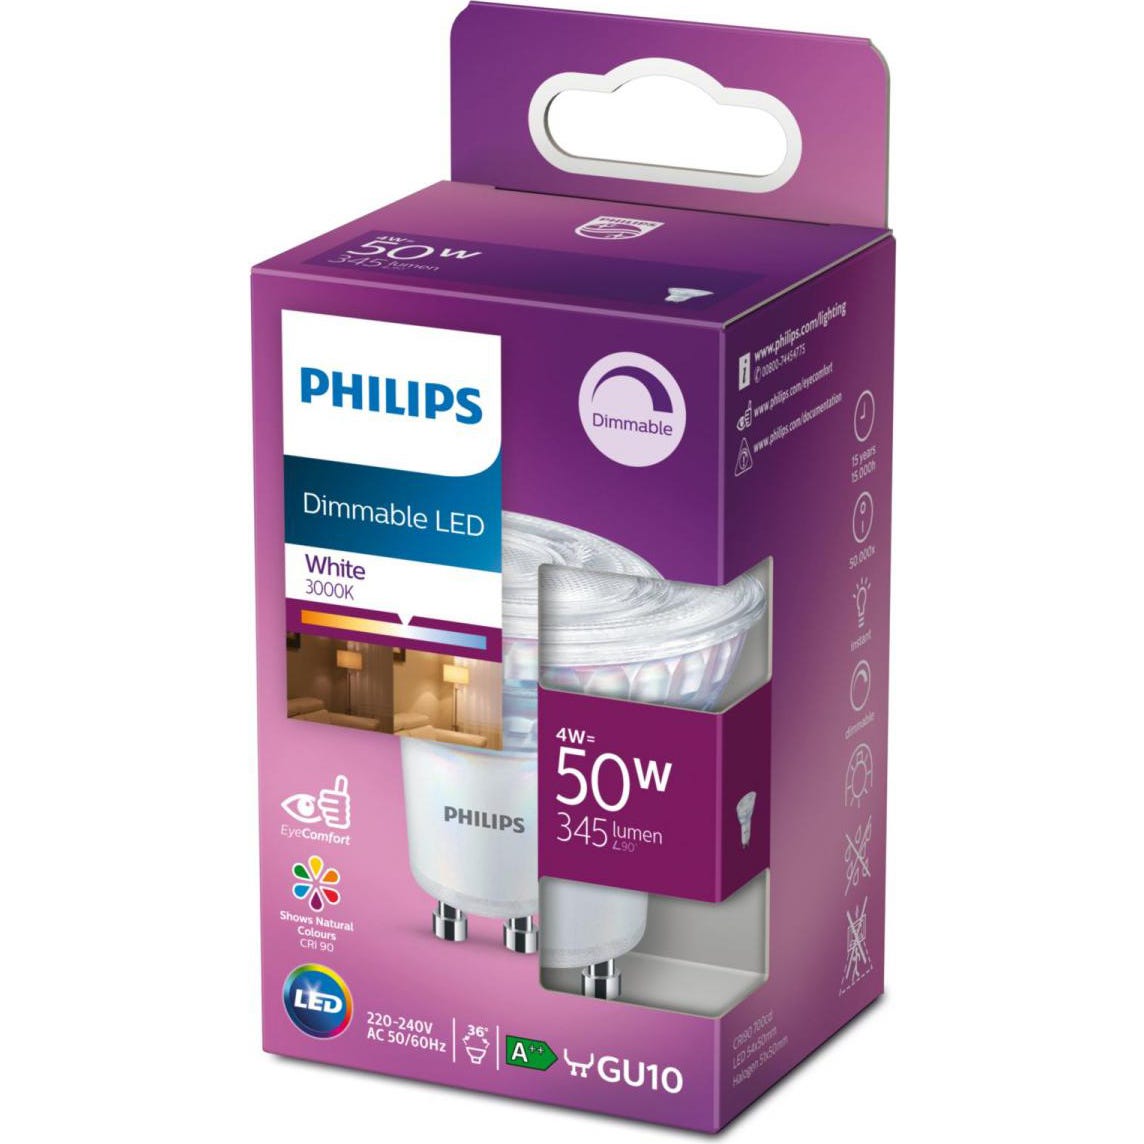 Philips ampoule LED Equivalent 50W GU10, Dimmable, Verre, Lot de 2 1